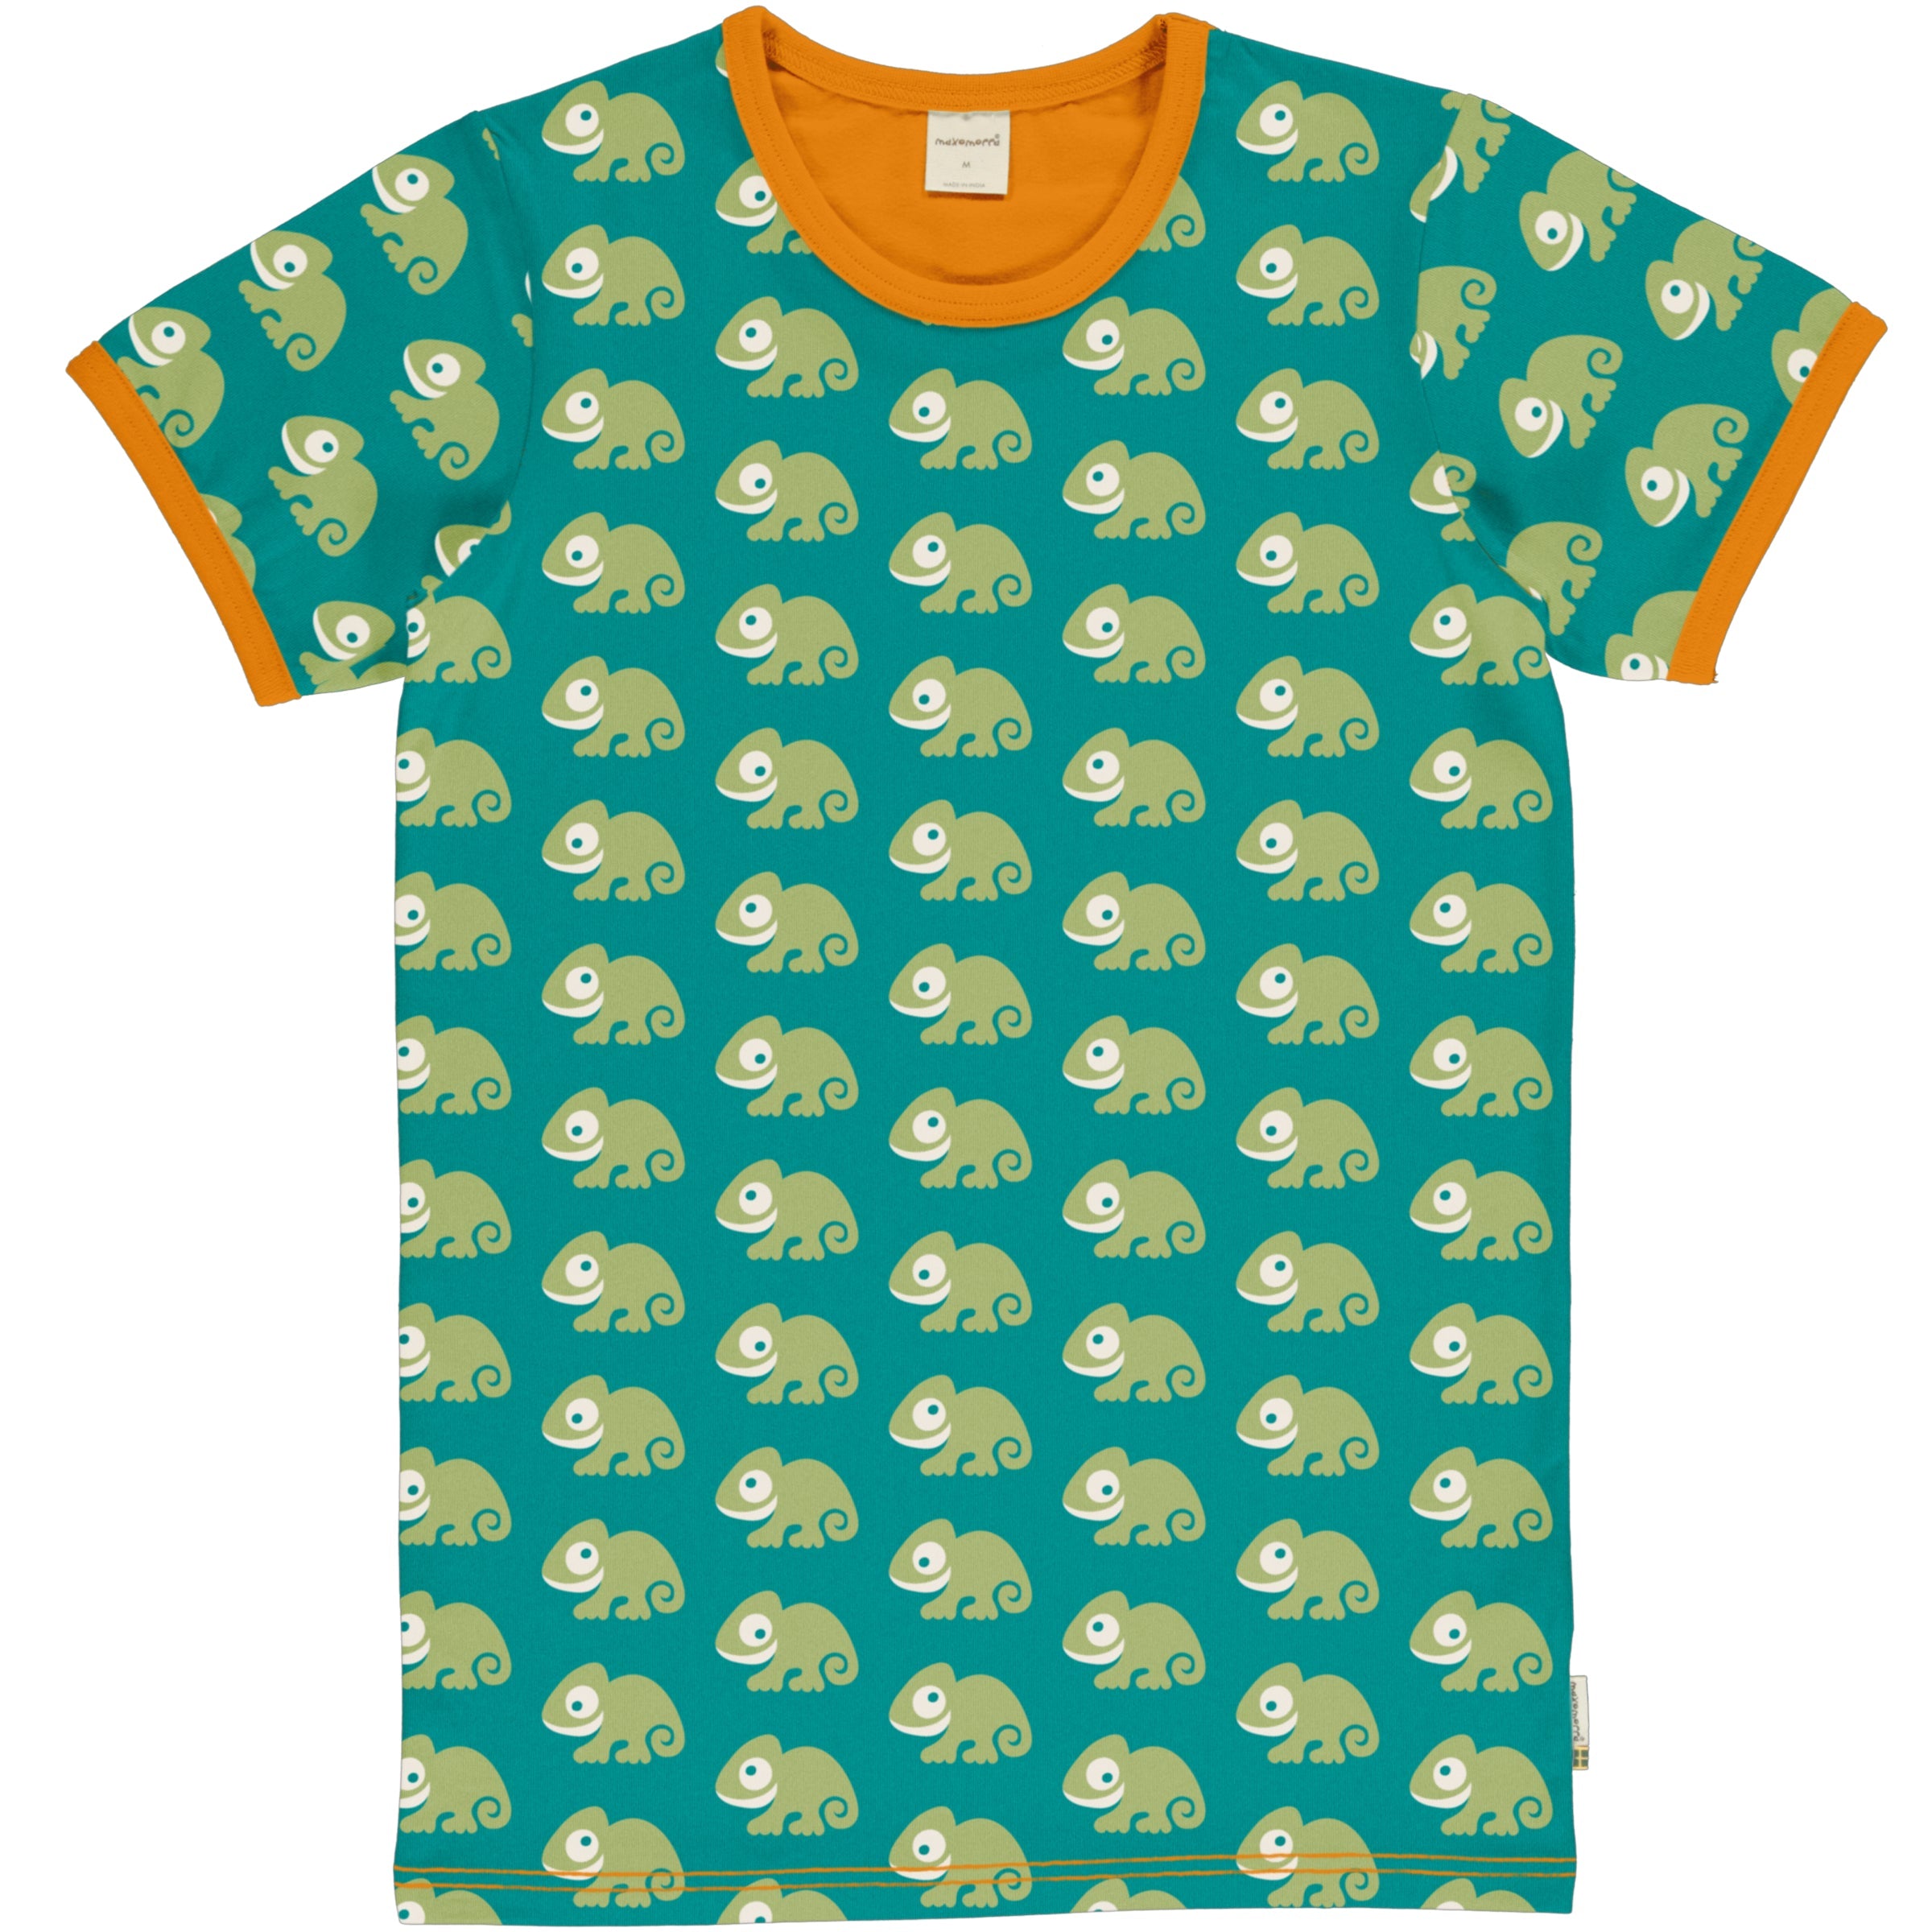 Children's Chameleon Short Sleeved T-Shirt - Maxomorra (Last Available)